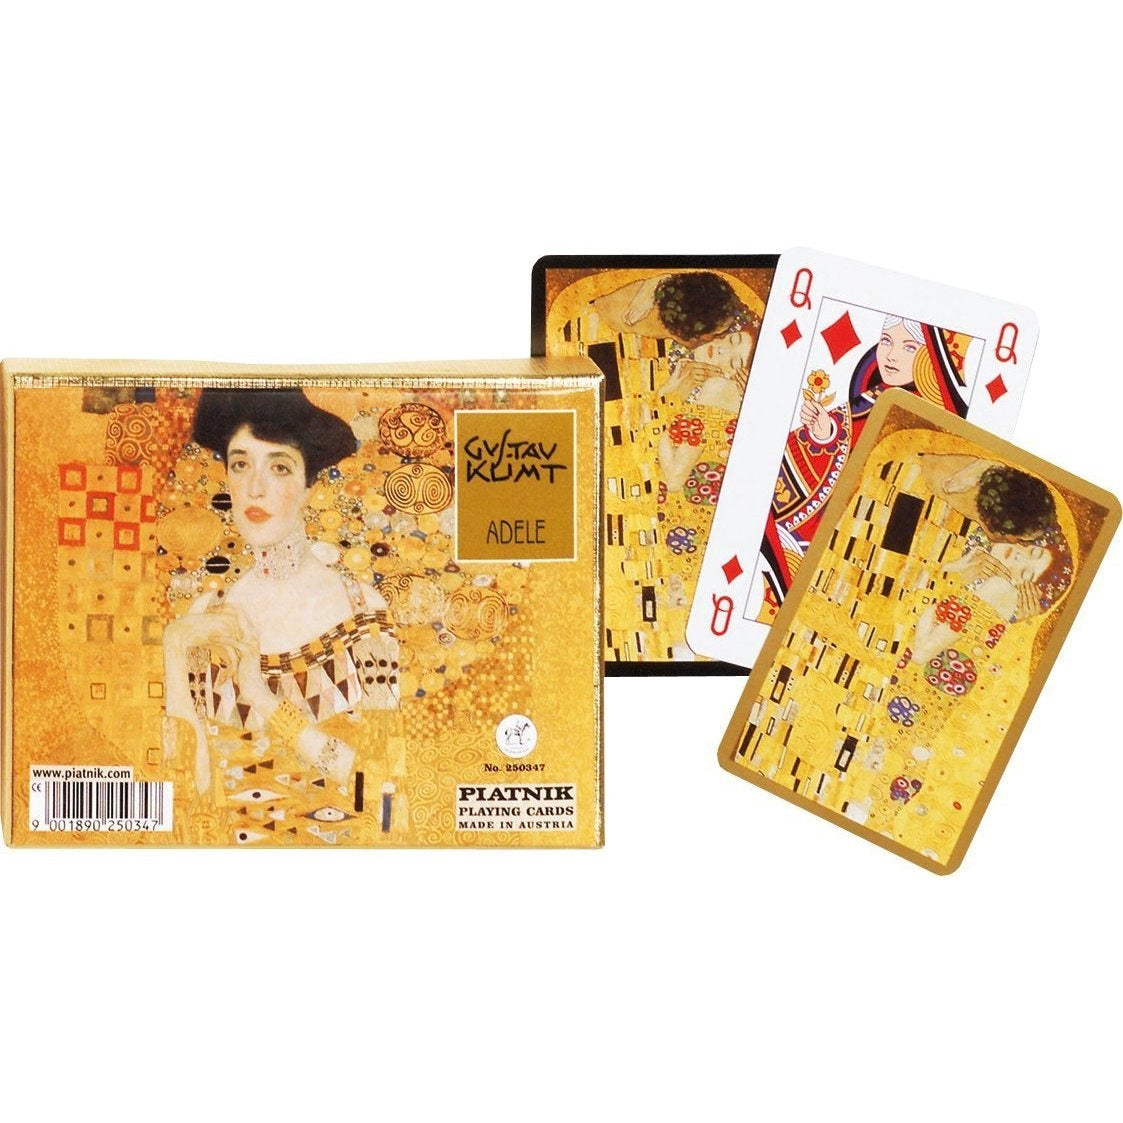 Piatnik Playing Cards Gustav Klimt Adele